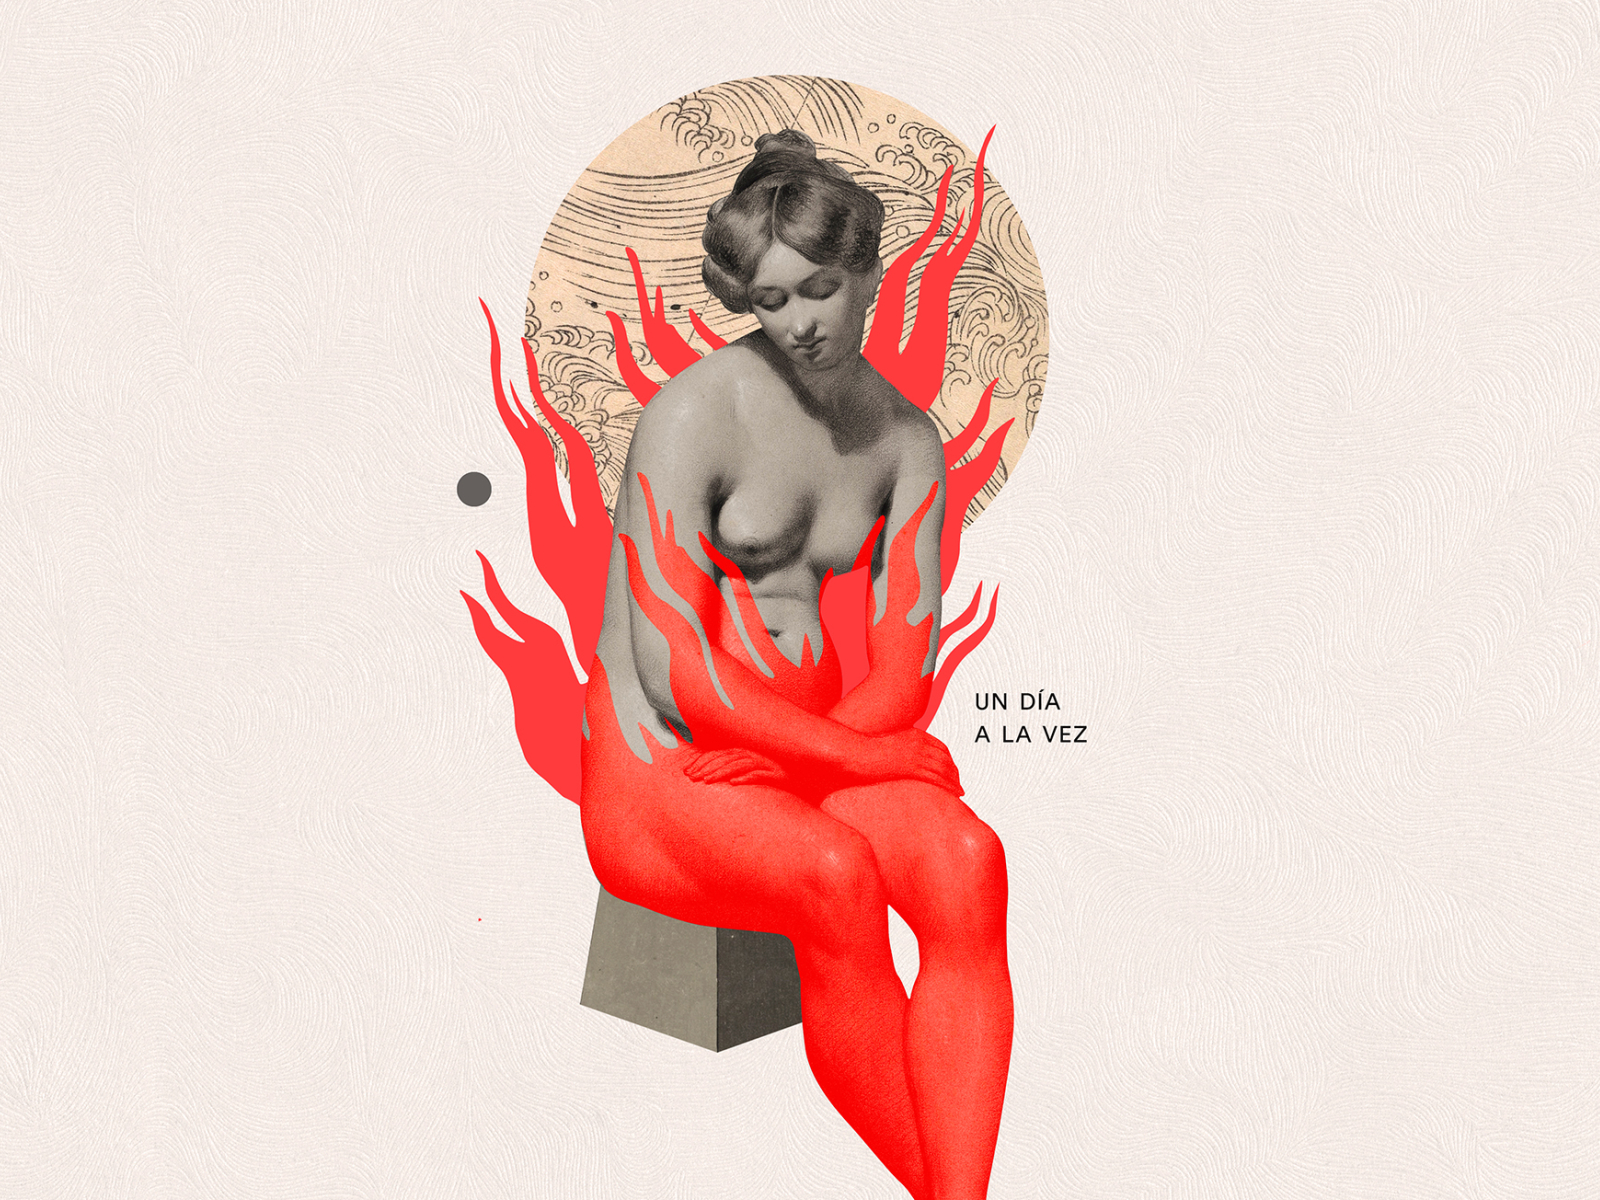 Un día a la vez collage fire illustration woman